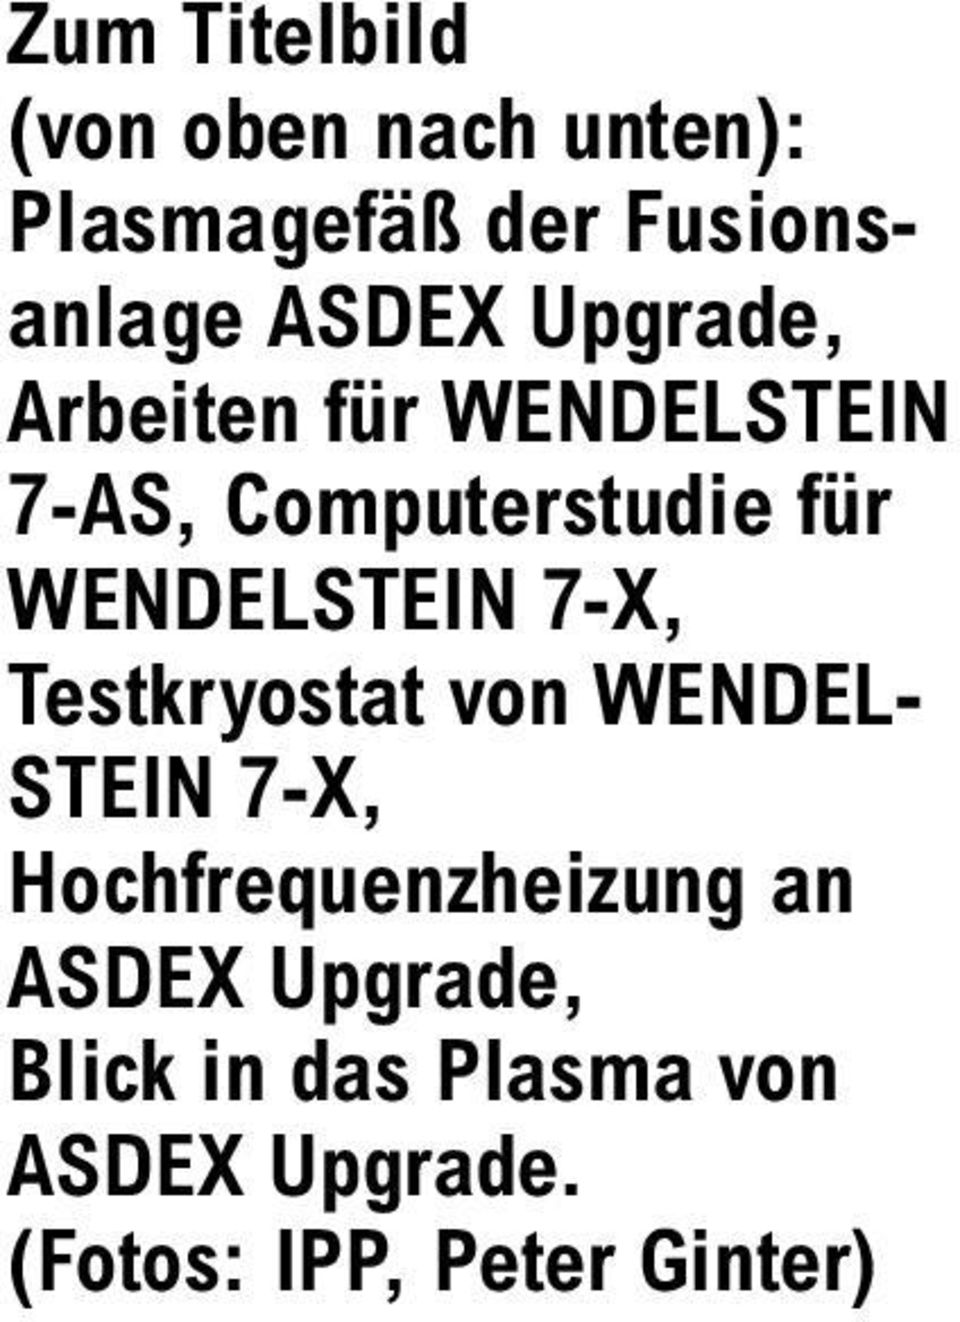 WENDELSTEIN 7-X, Testkryostat von WENDEL- STEIN 7-X,